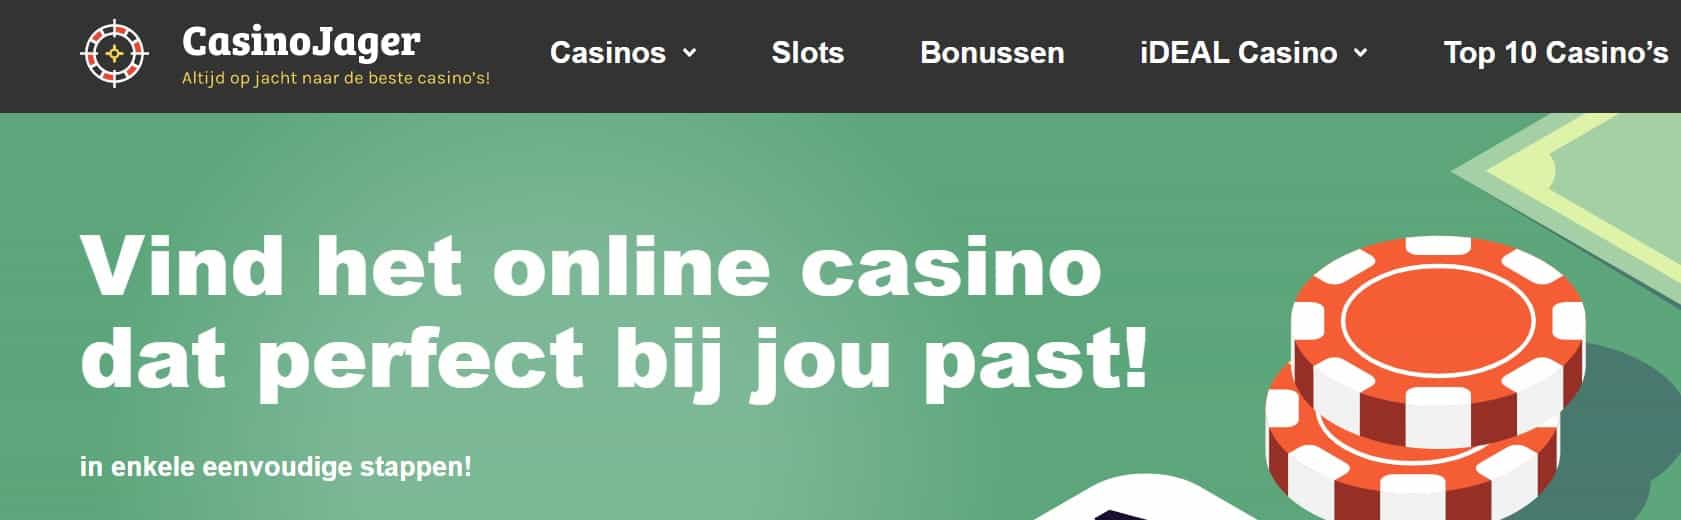 CasinoJager.com